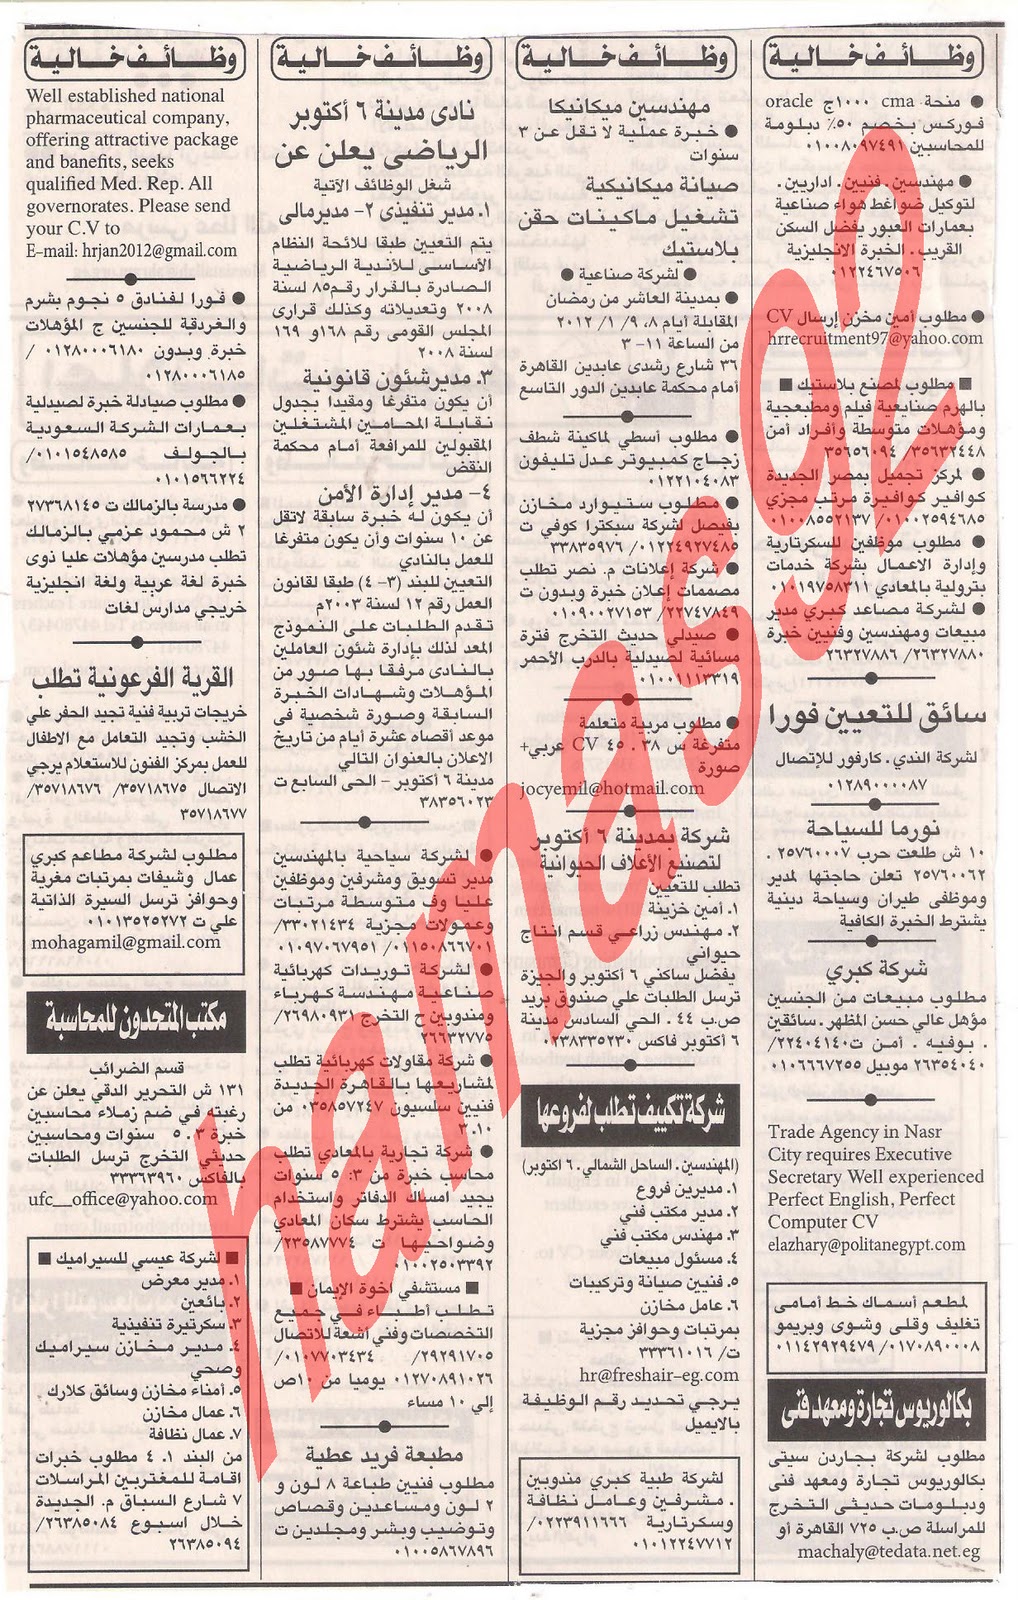 وظائف جريدة اهرام الجمعة 6\1\2012 و الجزء الاول Picture+008